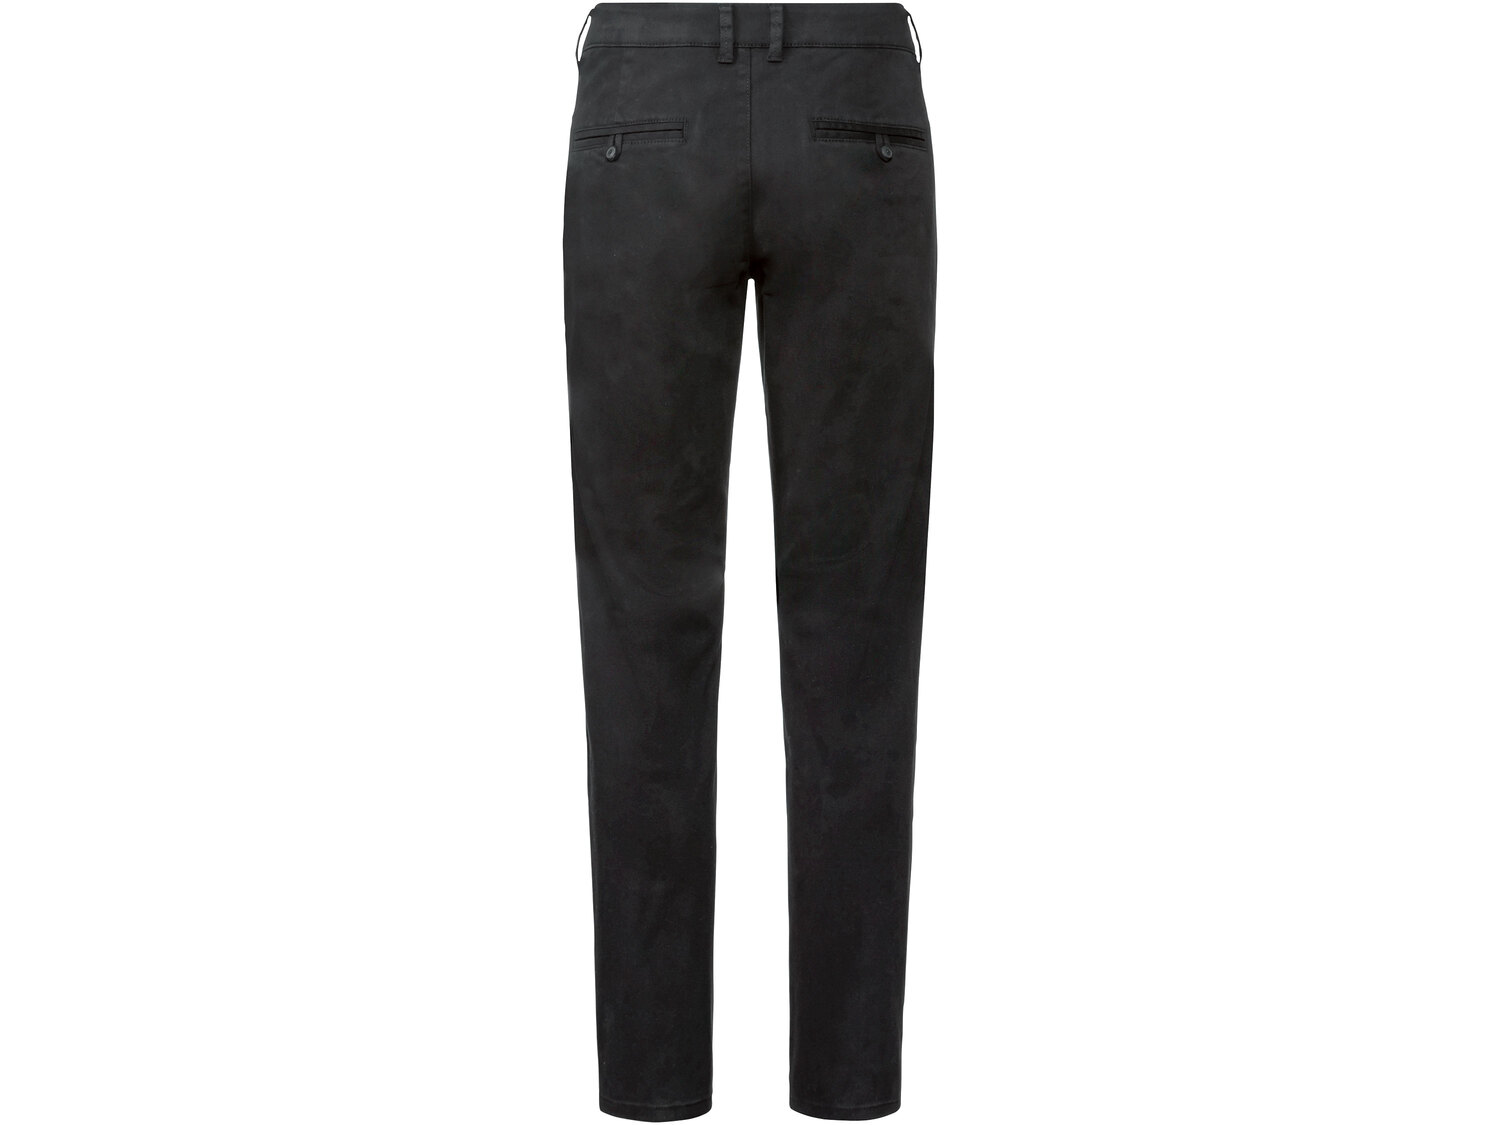 Spodnie męskie Livergy, cena 44,99 PLN 
- rozmiary: 48-56
- 98% bawełny, 2% elastanu ...